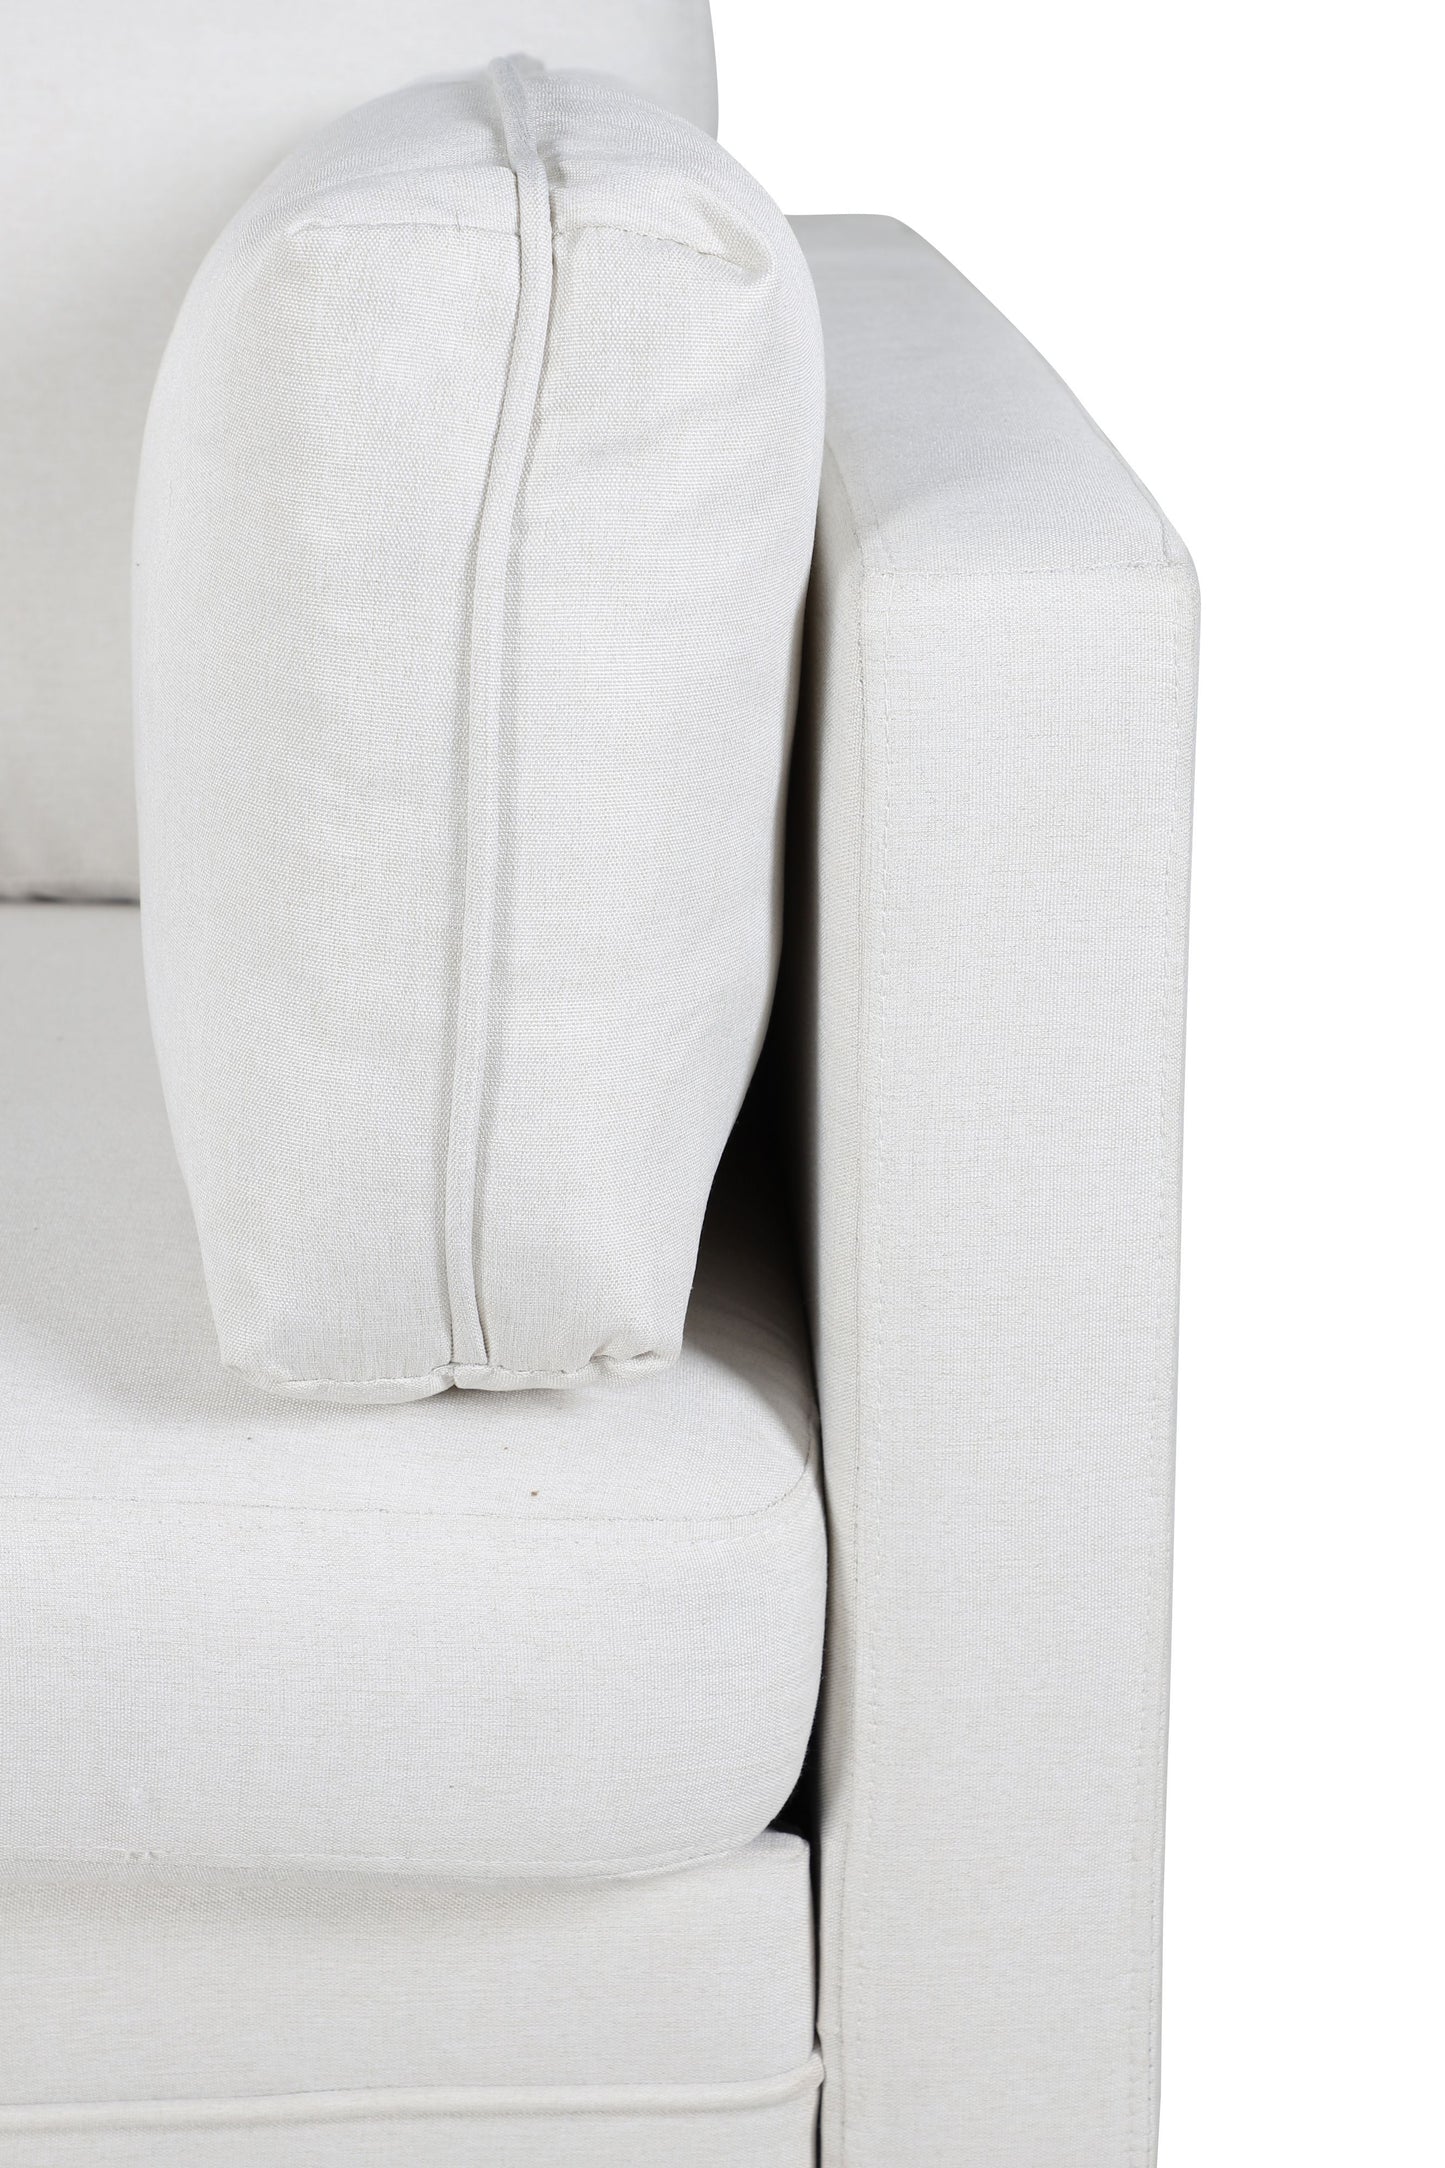 Venture-Design | Boom Lounge Chair – Stoff in Schwarz/Hellbeige